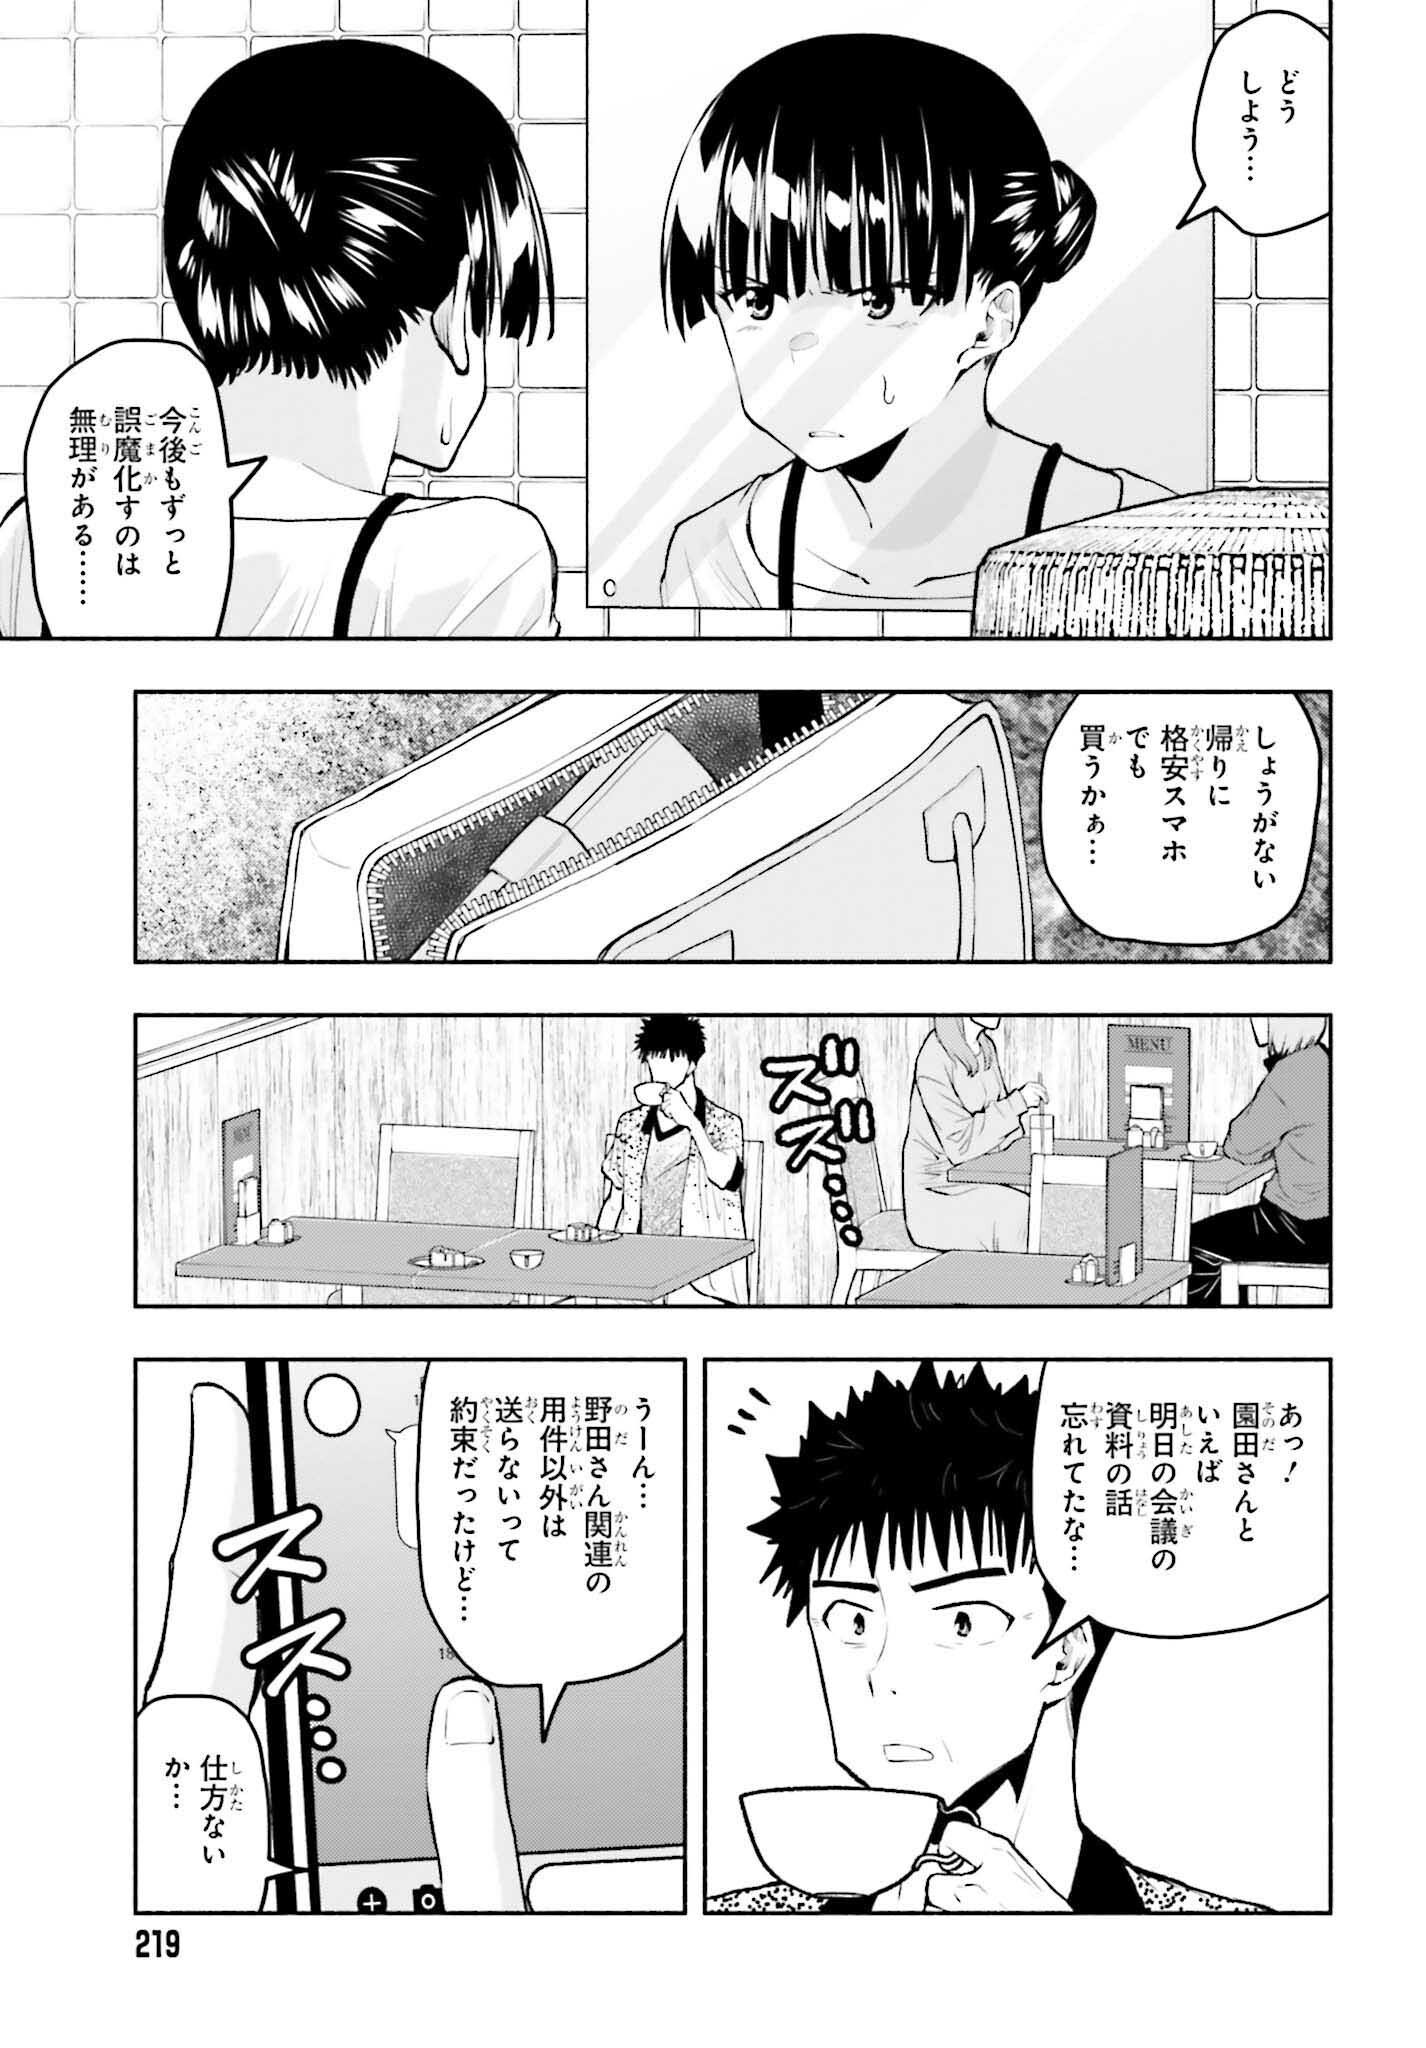 Omiai ni Sugoi Komyushou ga Kita - Chapter 14 - Page 3